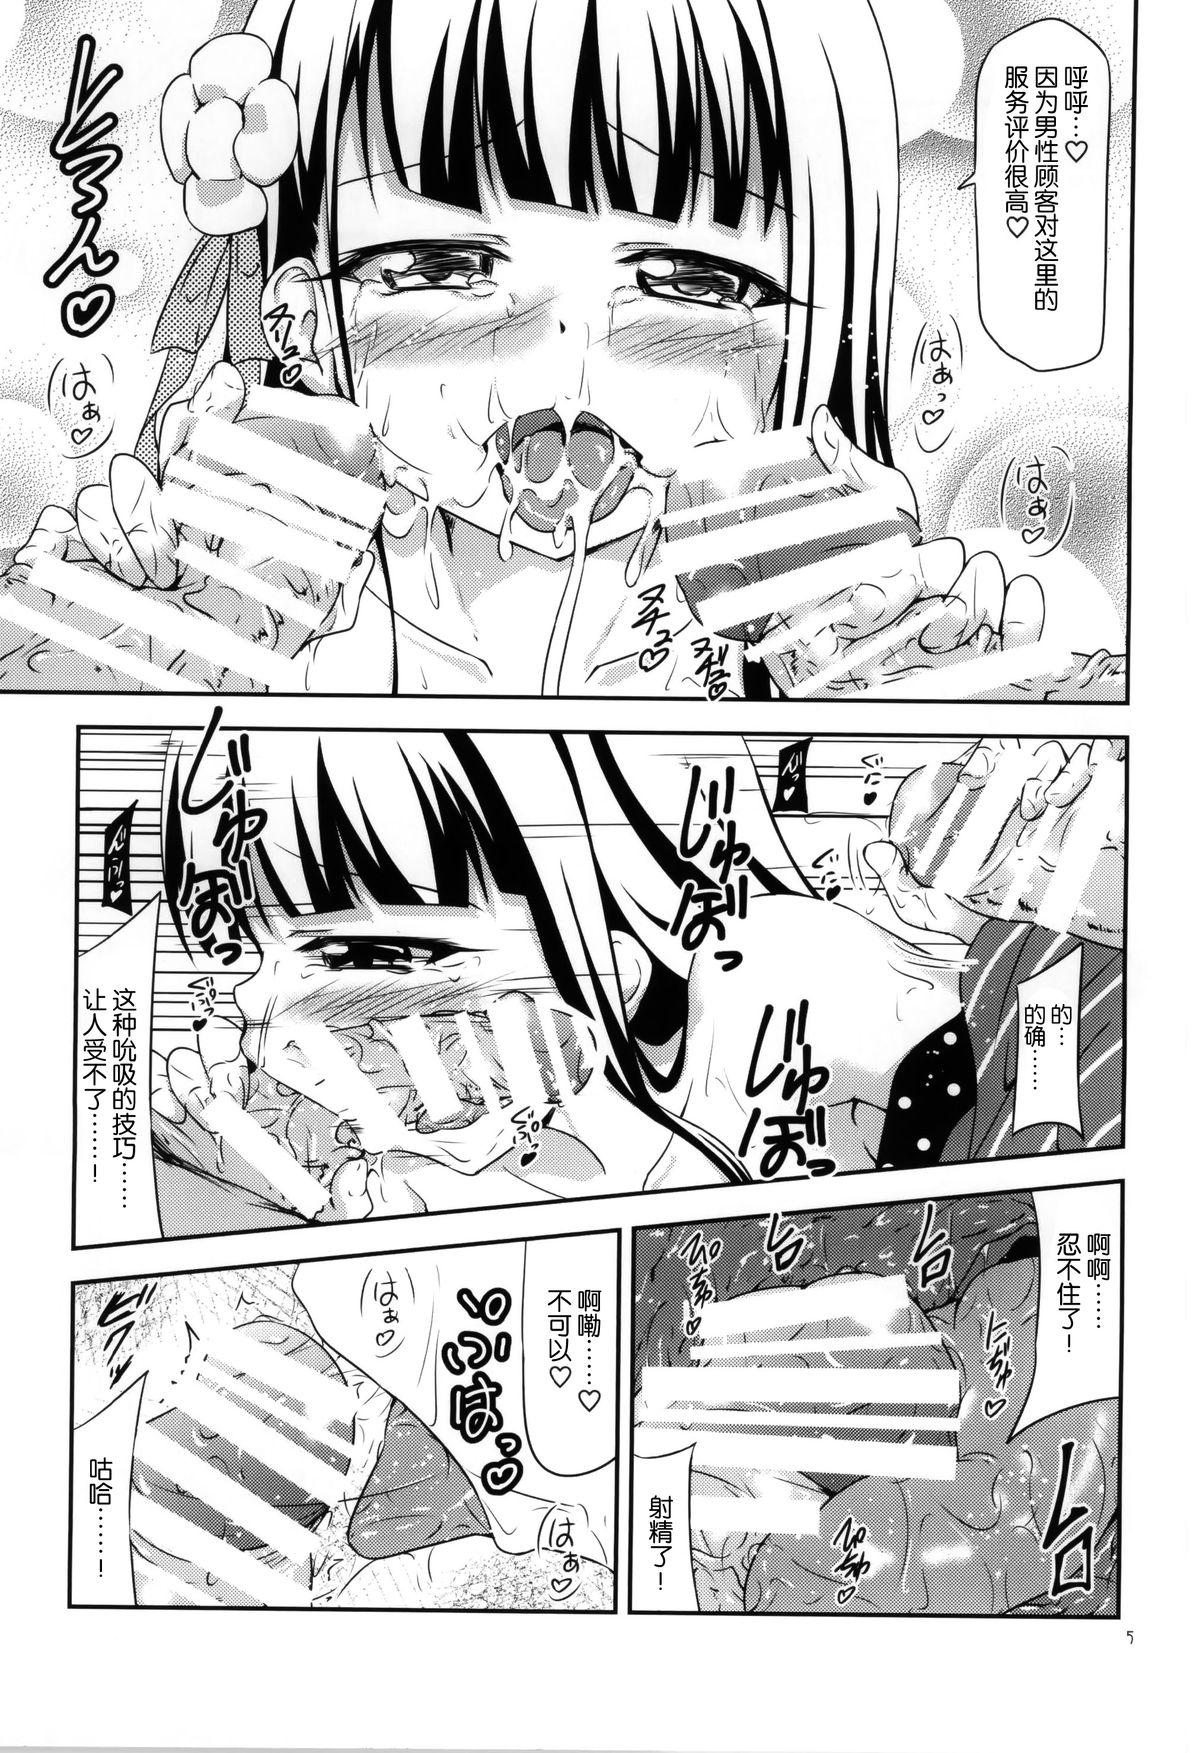 Romance Amausaan no Himitsu Menu - Gochuumon wa usagi desu ka Squirt - Page 5